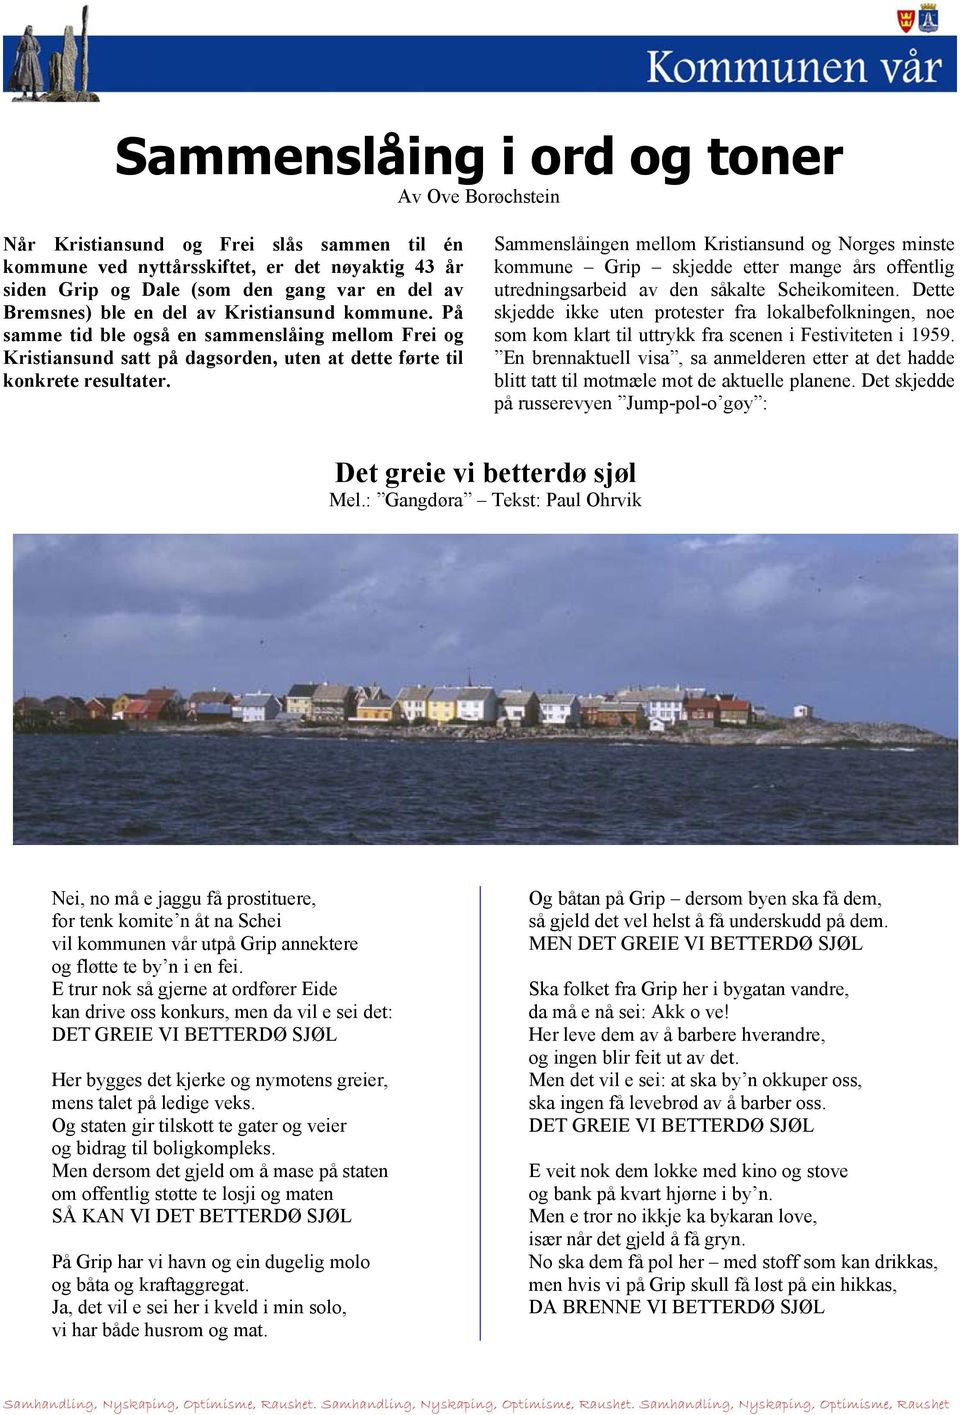 Sammenslåingen mellom Kristiansund og Norges minste kommune Grip skjedde etter mange års offentlig utredningsarbeid av den såkalte Scheikomiteen.